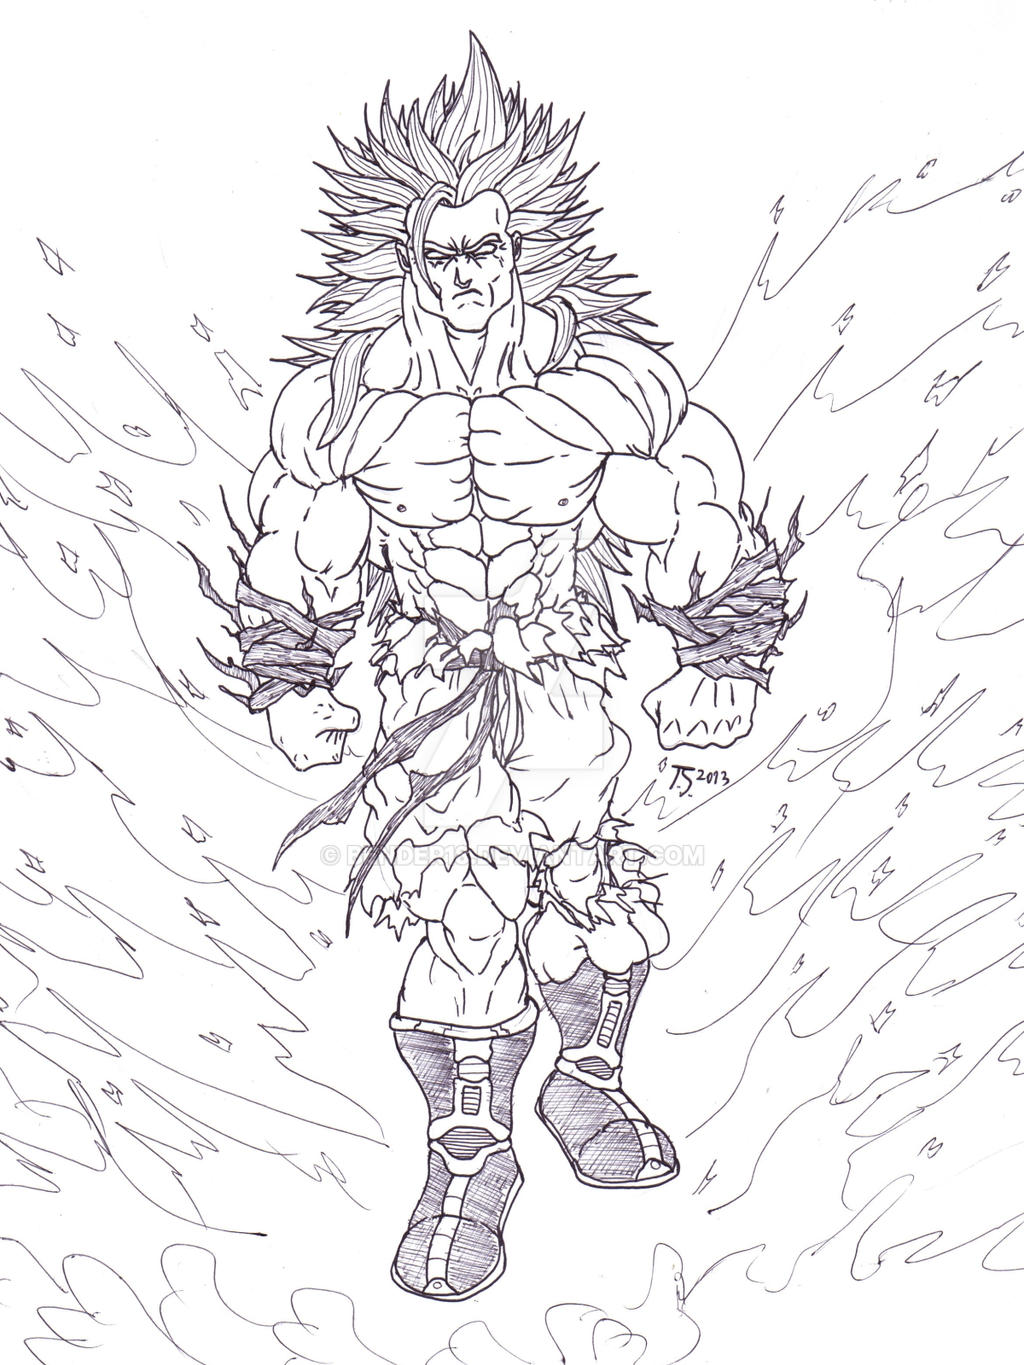 Super Saiyan God Goku by Bender18 on DeviantArt